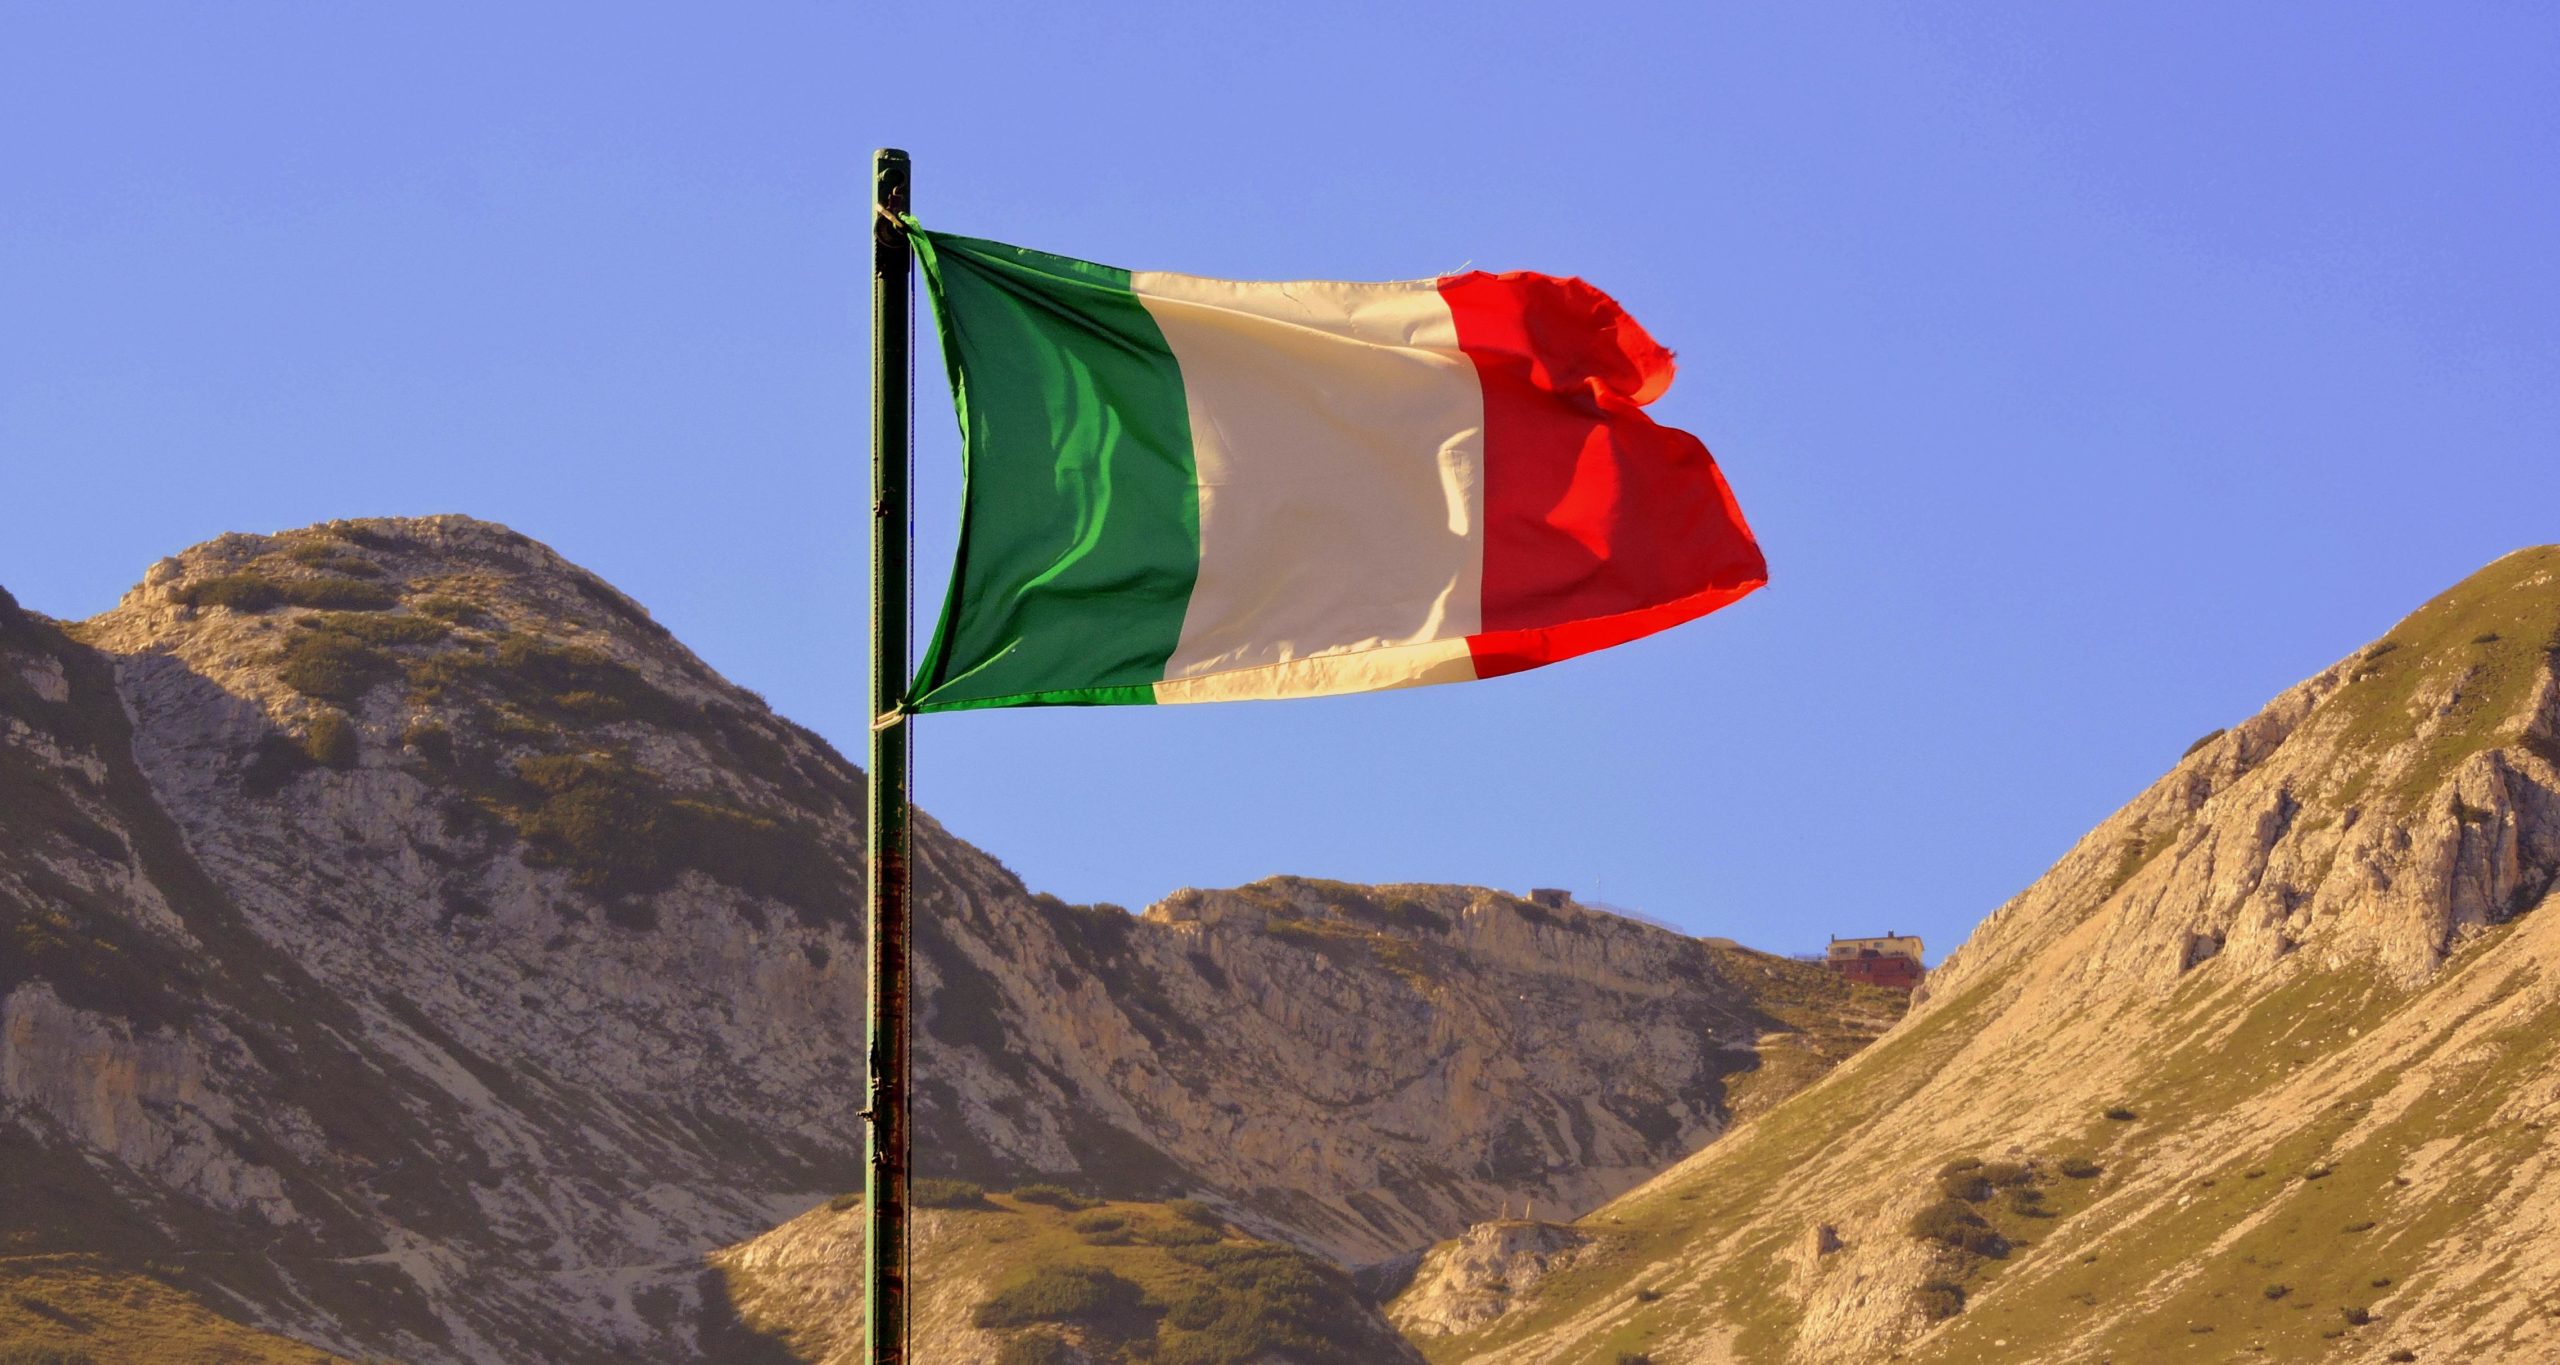 Die Flagge von Italien in einer Landschaft. Bildquelle: pcdazero